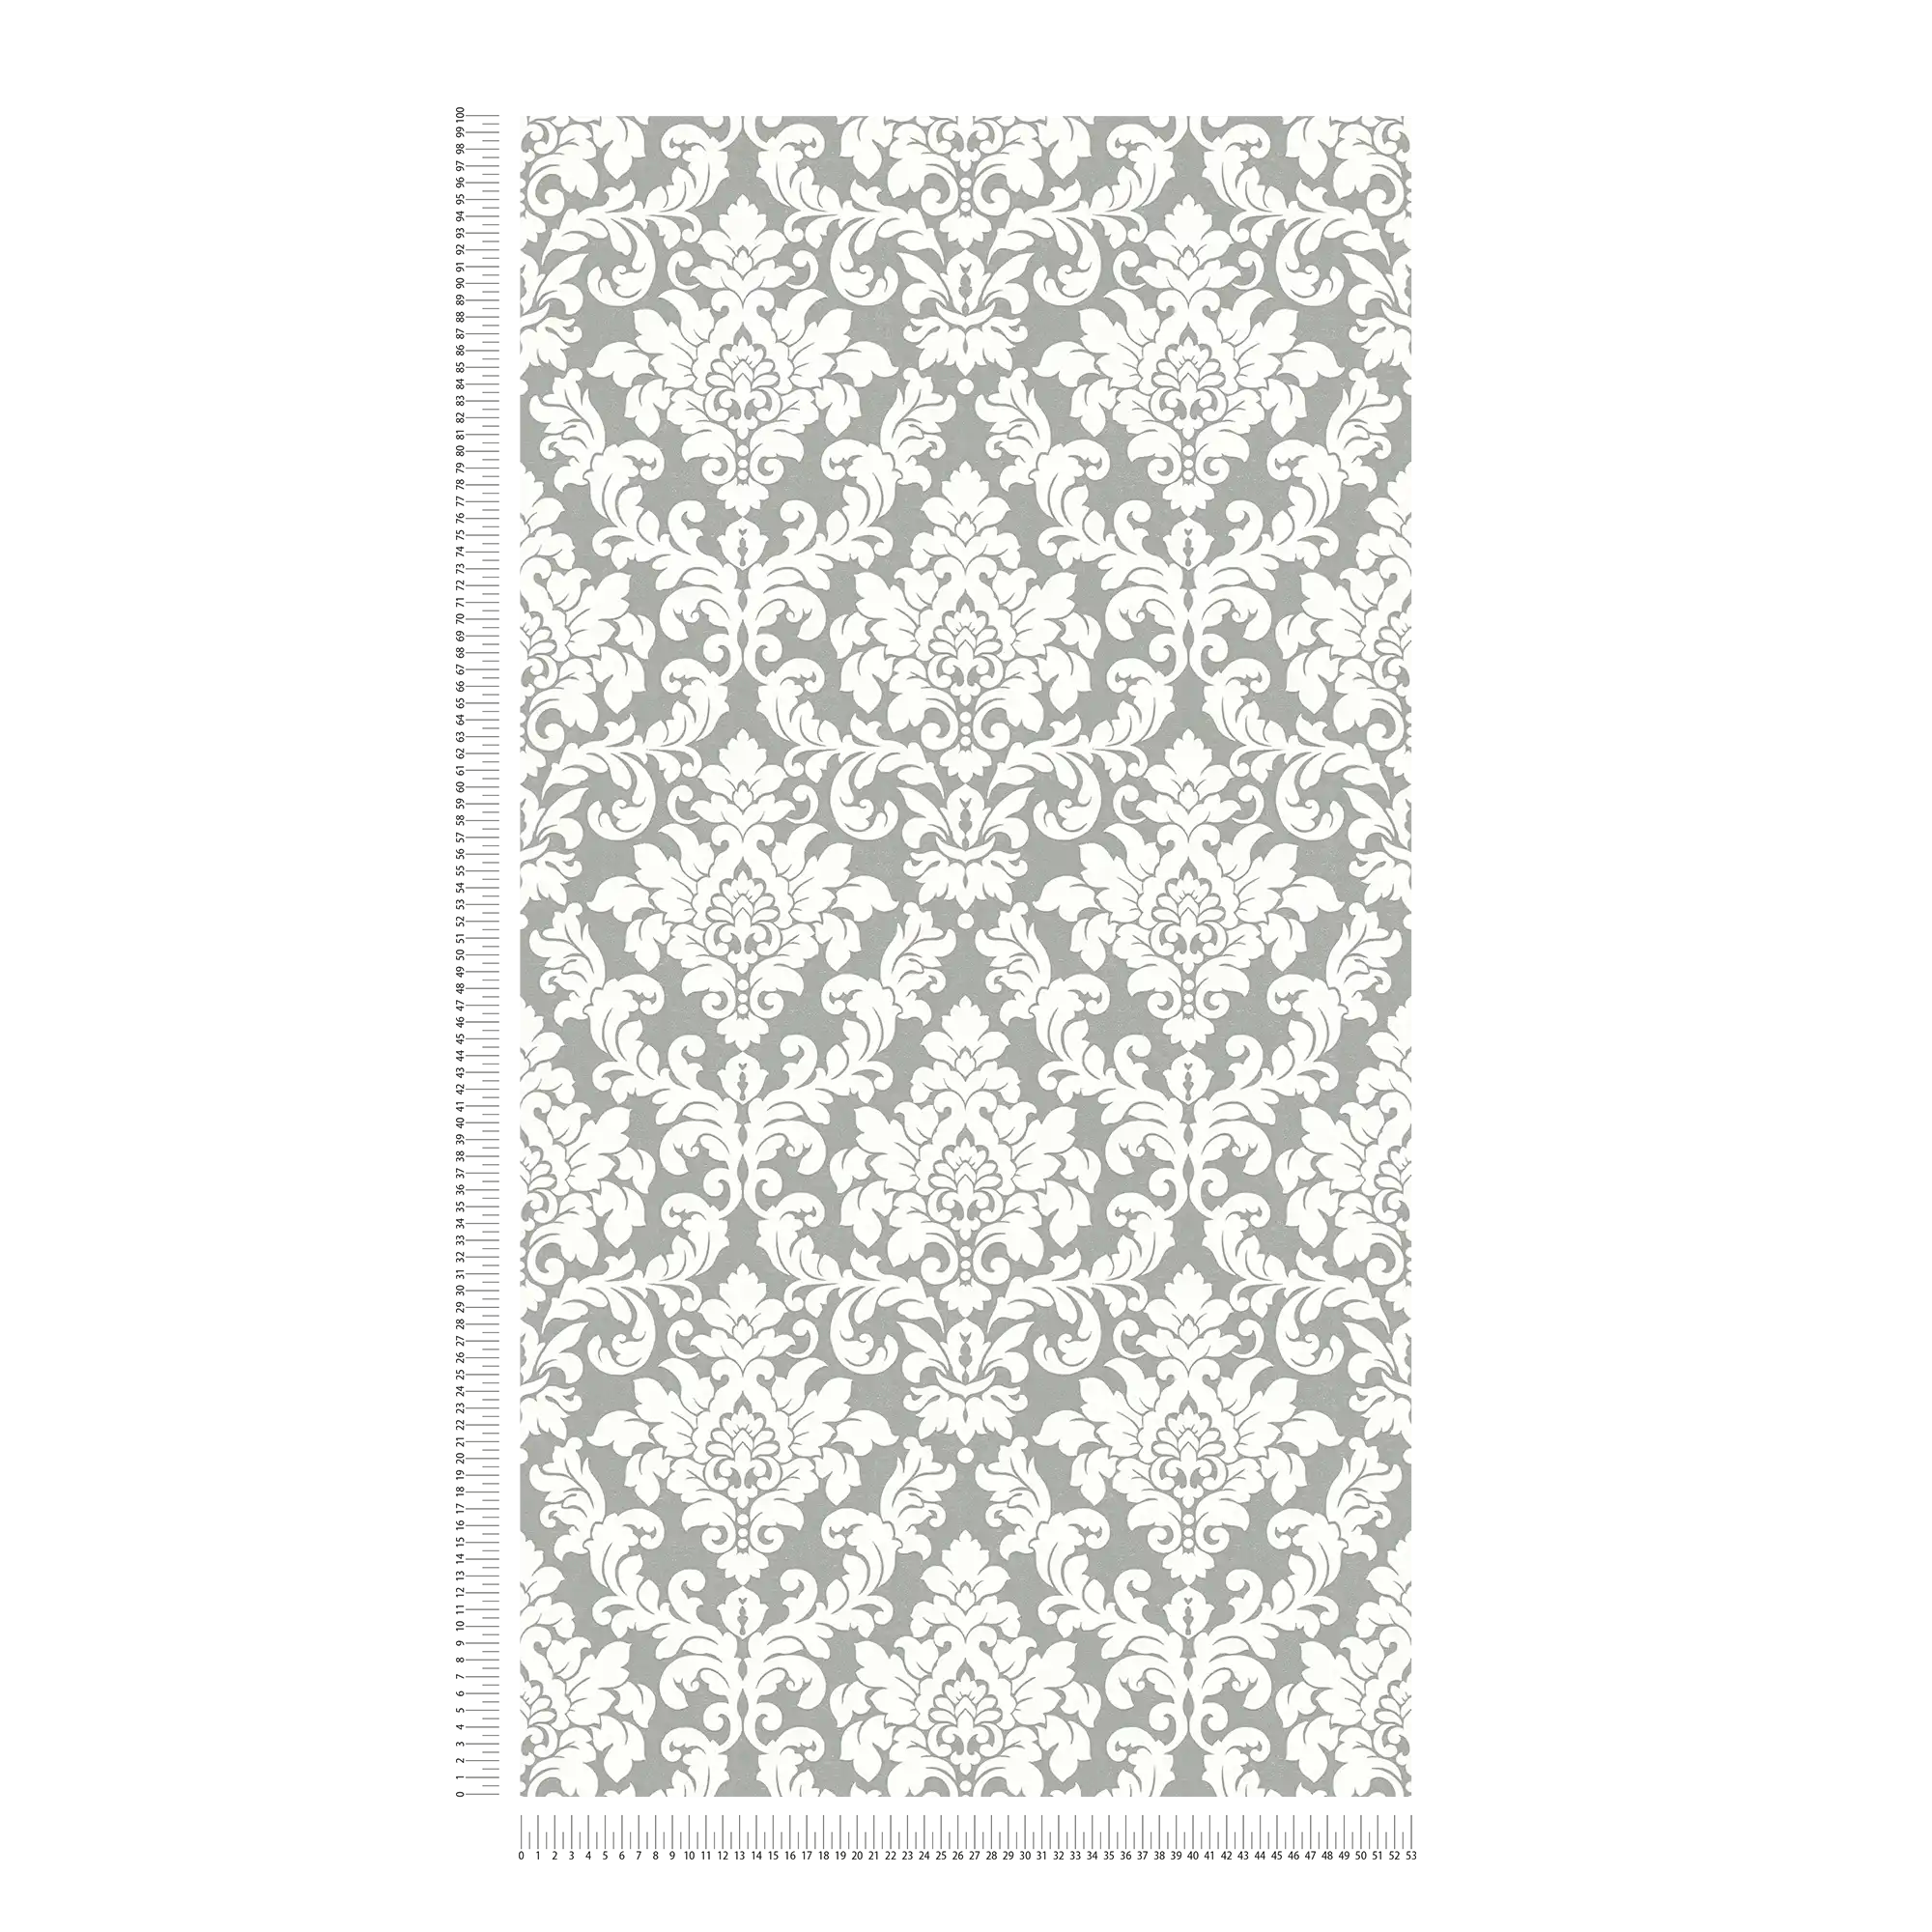             Zilver behang met wit ornament ontwerp
        